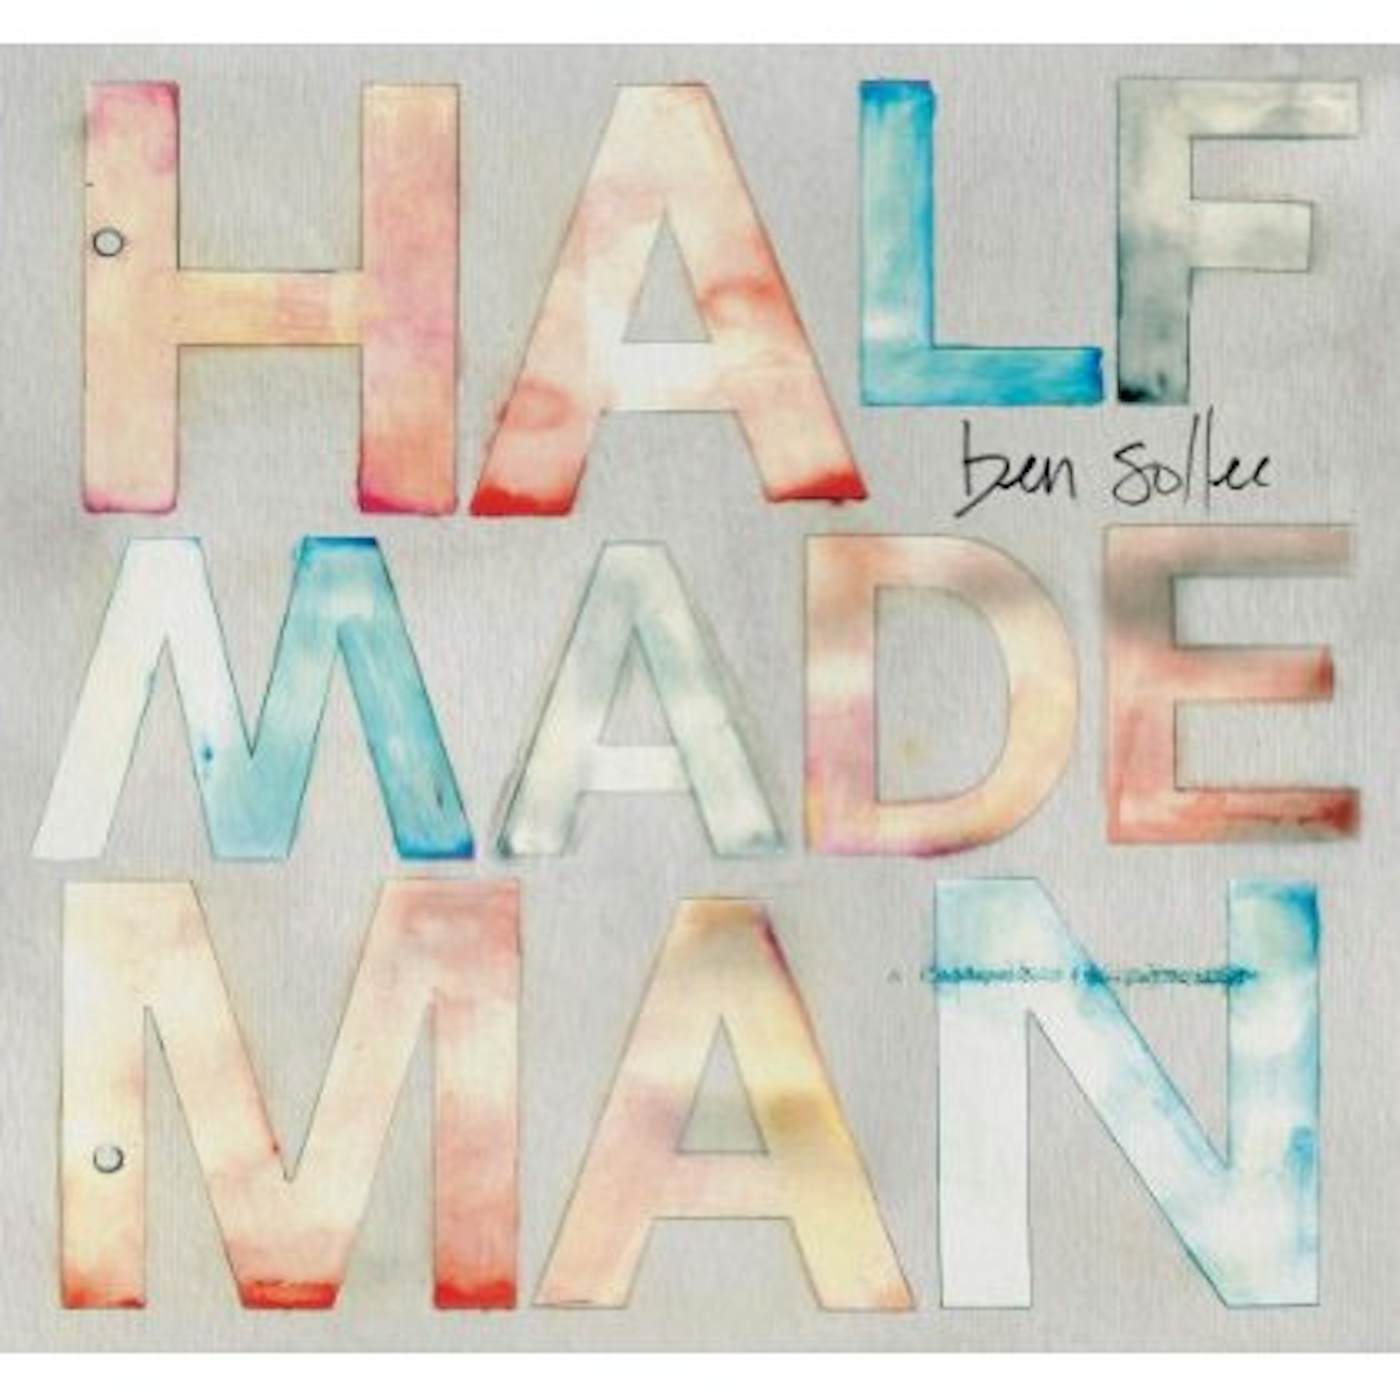 Ben Sollee HALF MADE MAN CD